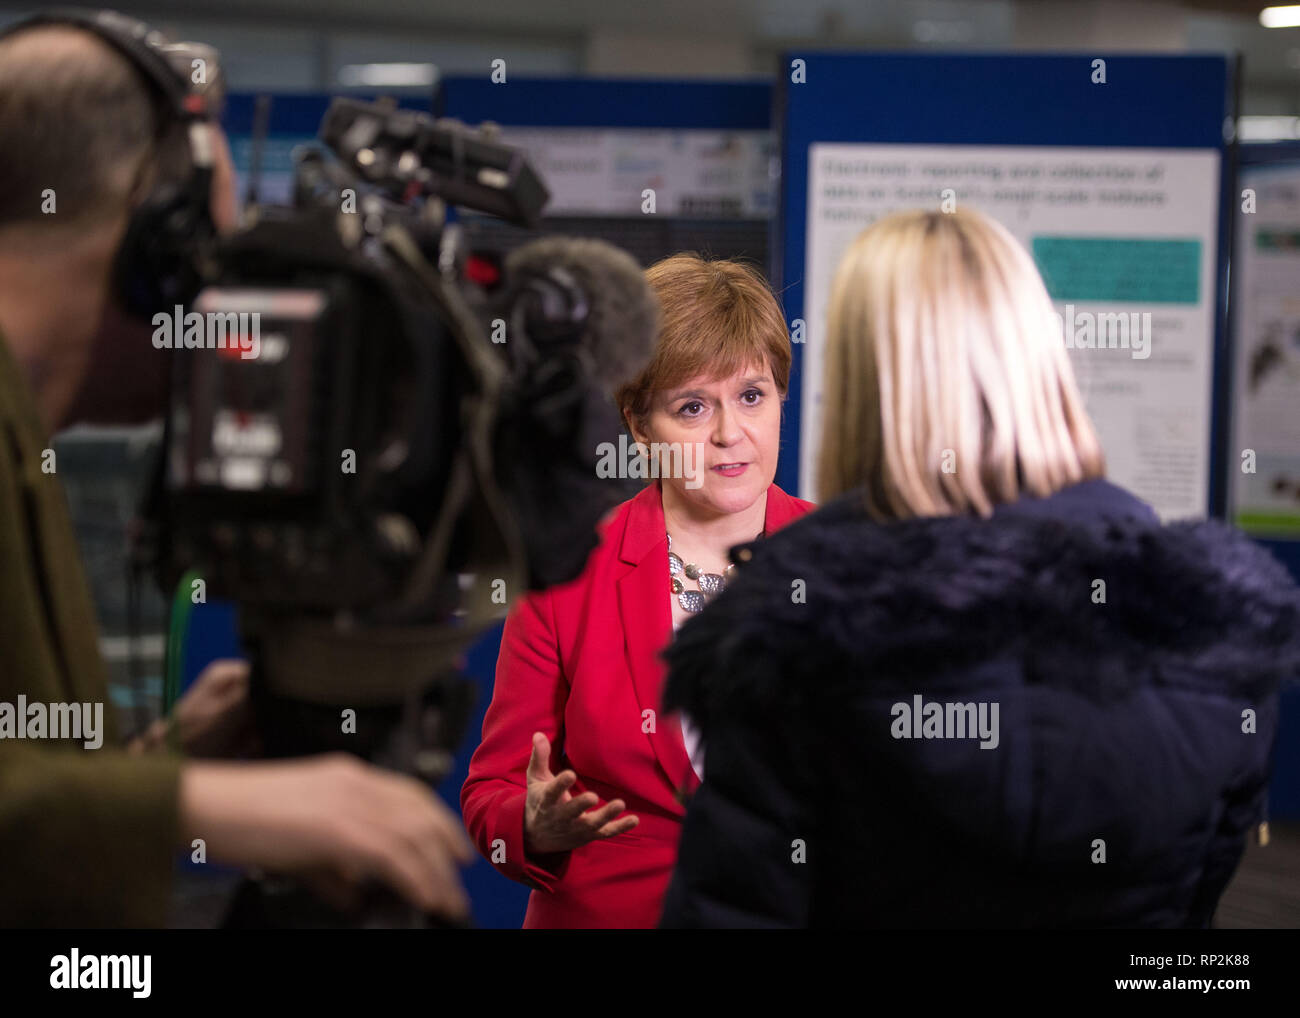 Glasgow, Royaume-Uni. 20 février 2019. Premier Ministre, Nicola Sturgeon donne des entrevues avec les médias à la Conférence maritime internationale à Glasgow. Crédit : Colin Fisher/Alamy Live News Banque D'Images